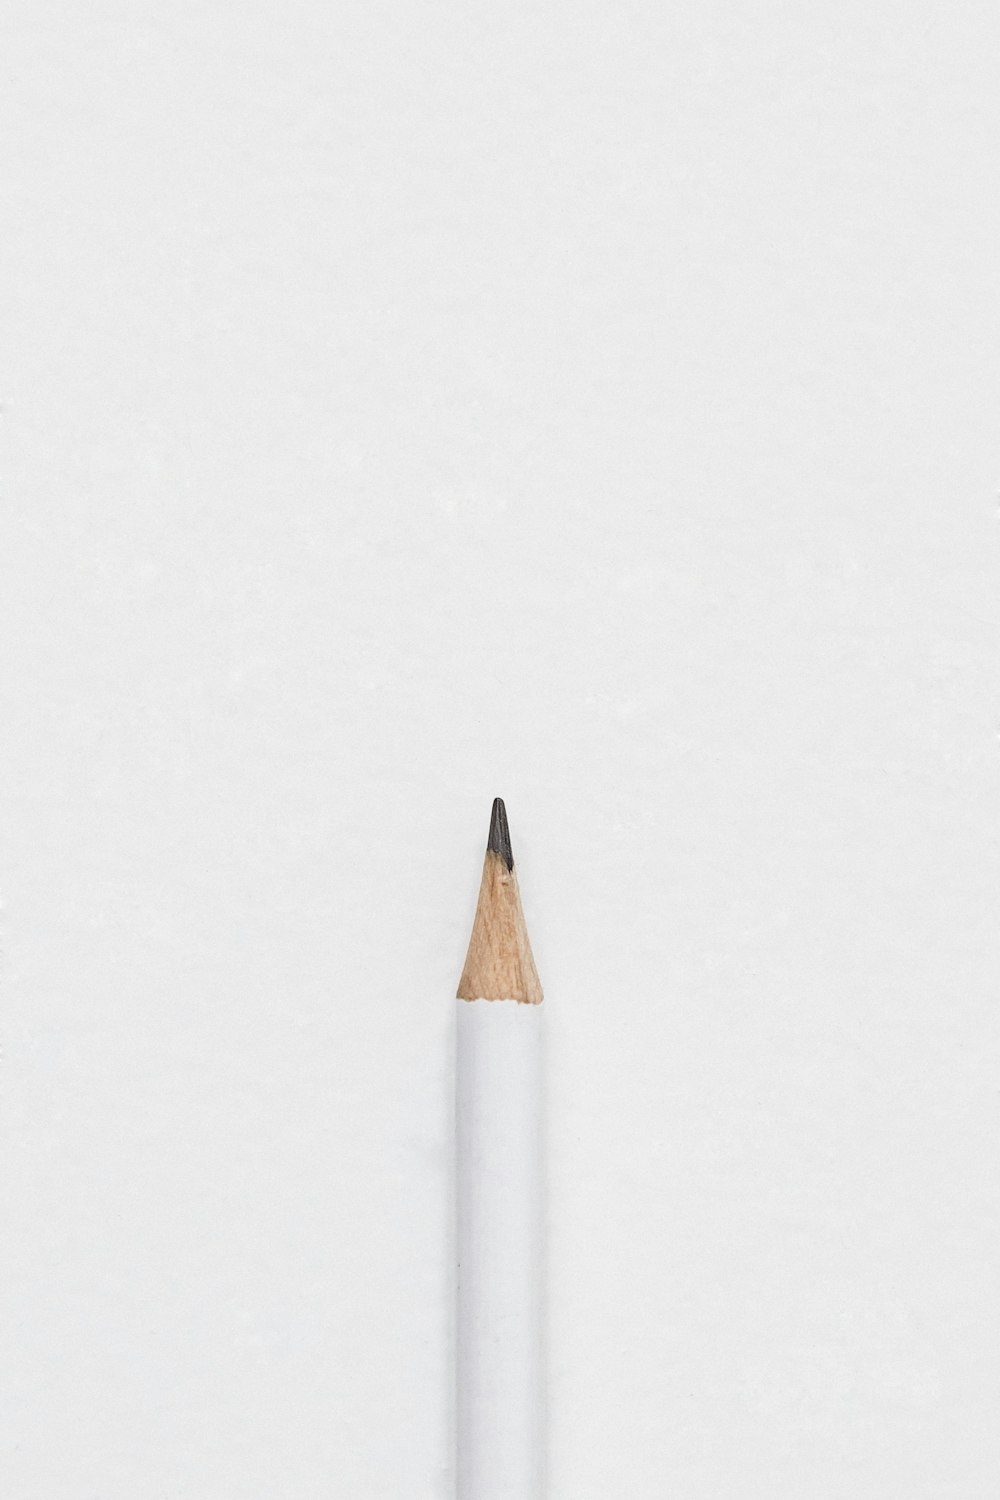 lápis de chumbo branco na superfície